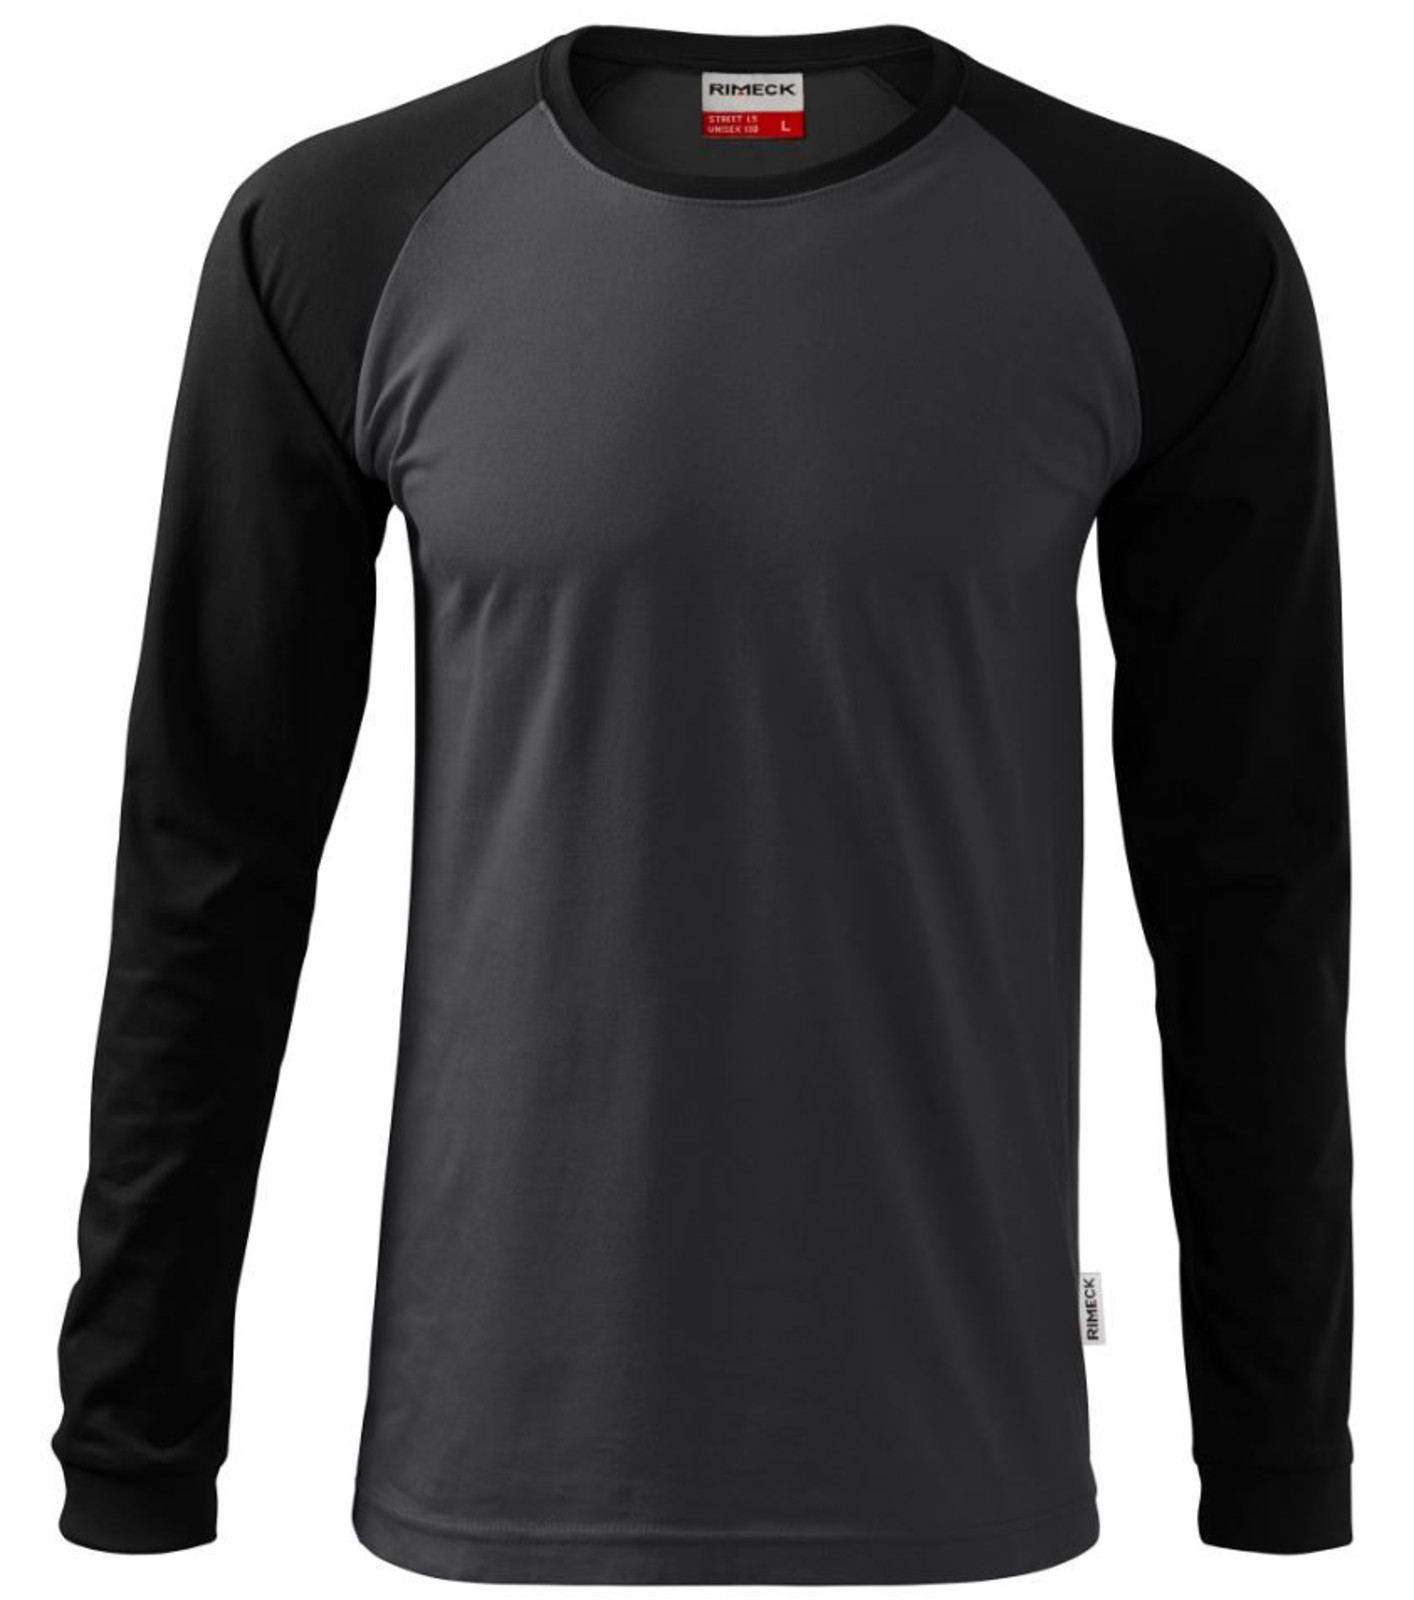 Unisex tričko s dlhým rukávom Rimeck Street LS 130 - veľkosť: L, farba: sivá/čierna